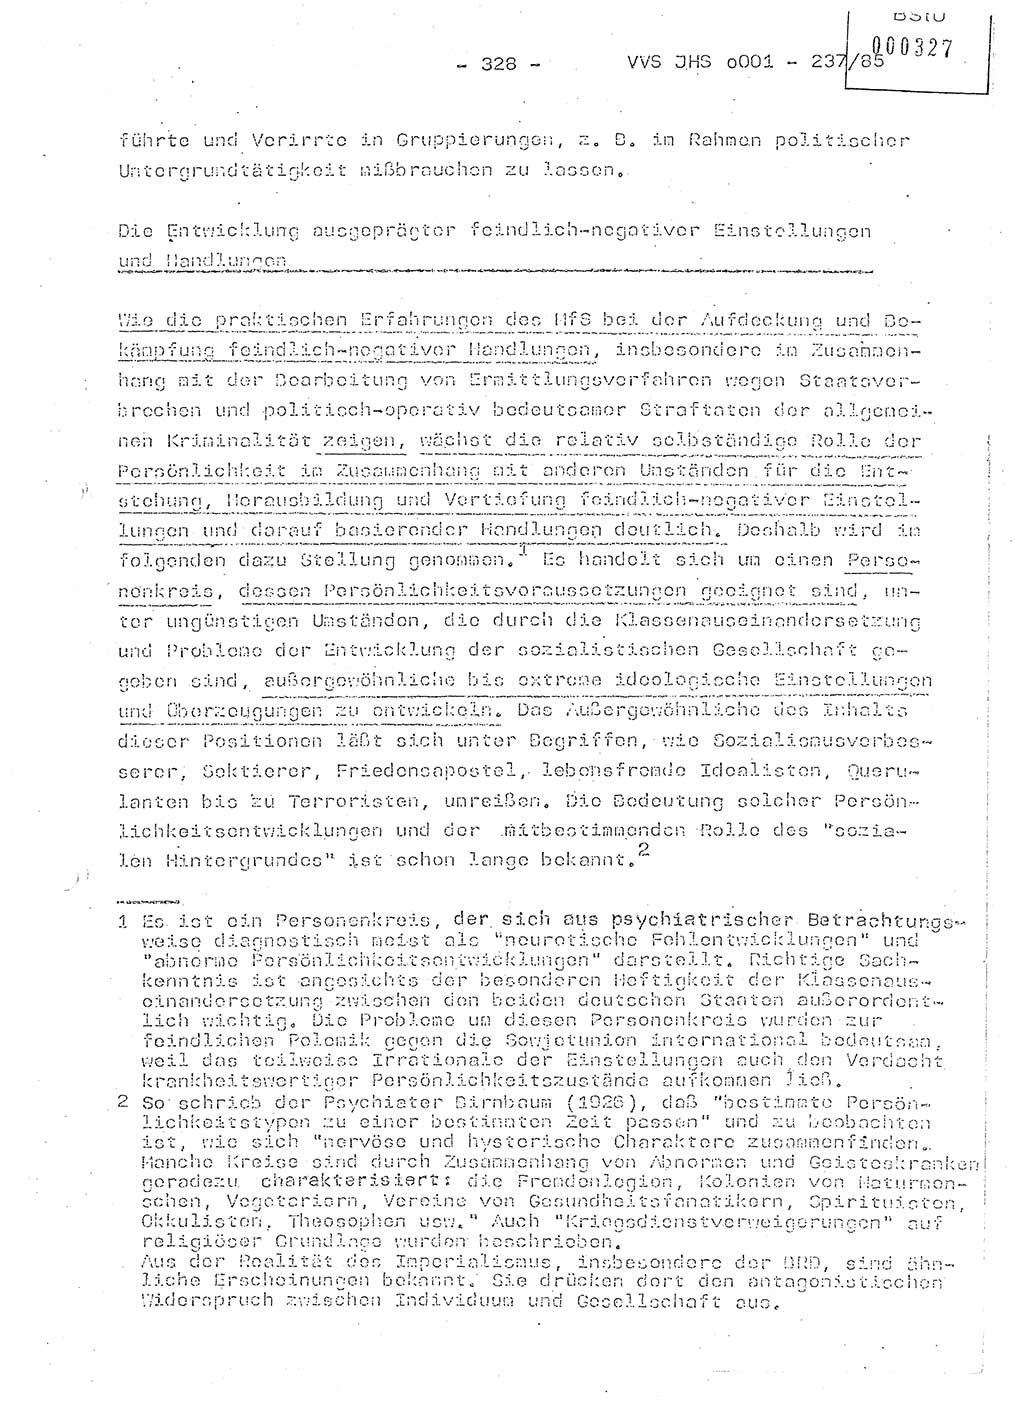 Dissertation Oberstleutnant Peter Jakulski (JHS), Oberstleutnat Christian Rudolph (HA Ⅸ), Major Horst Böttger (ZMD), Major Wolfgang Grüneberg (JHS), Major Albert Meutsch (JHS), Ministerium für Staatssicherheit (MfS) [Deutsche Demokratische Republik (DDR)], Juristische Hochschule (JHS), Vertrauliche Verschlußsache (VVS) o001-237/85, Potsdam 1985, Seite 328 (Diss. MfS DDR JHS VVS o001-237/85 1985, S. 328)